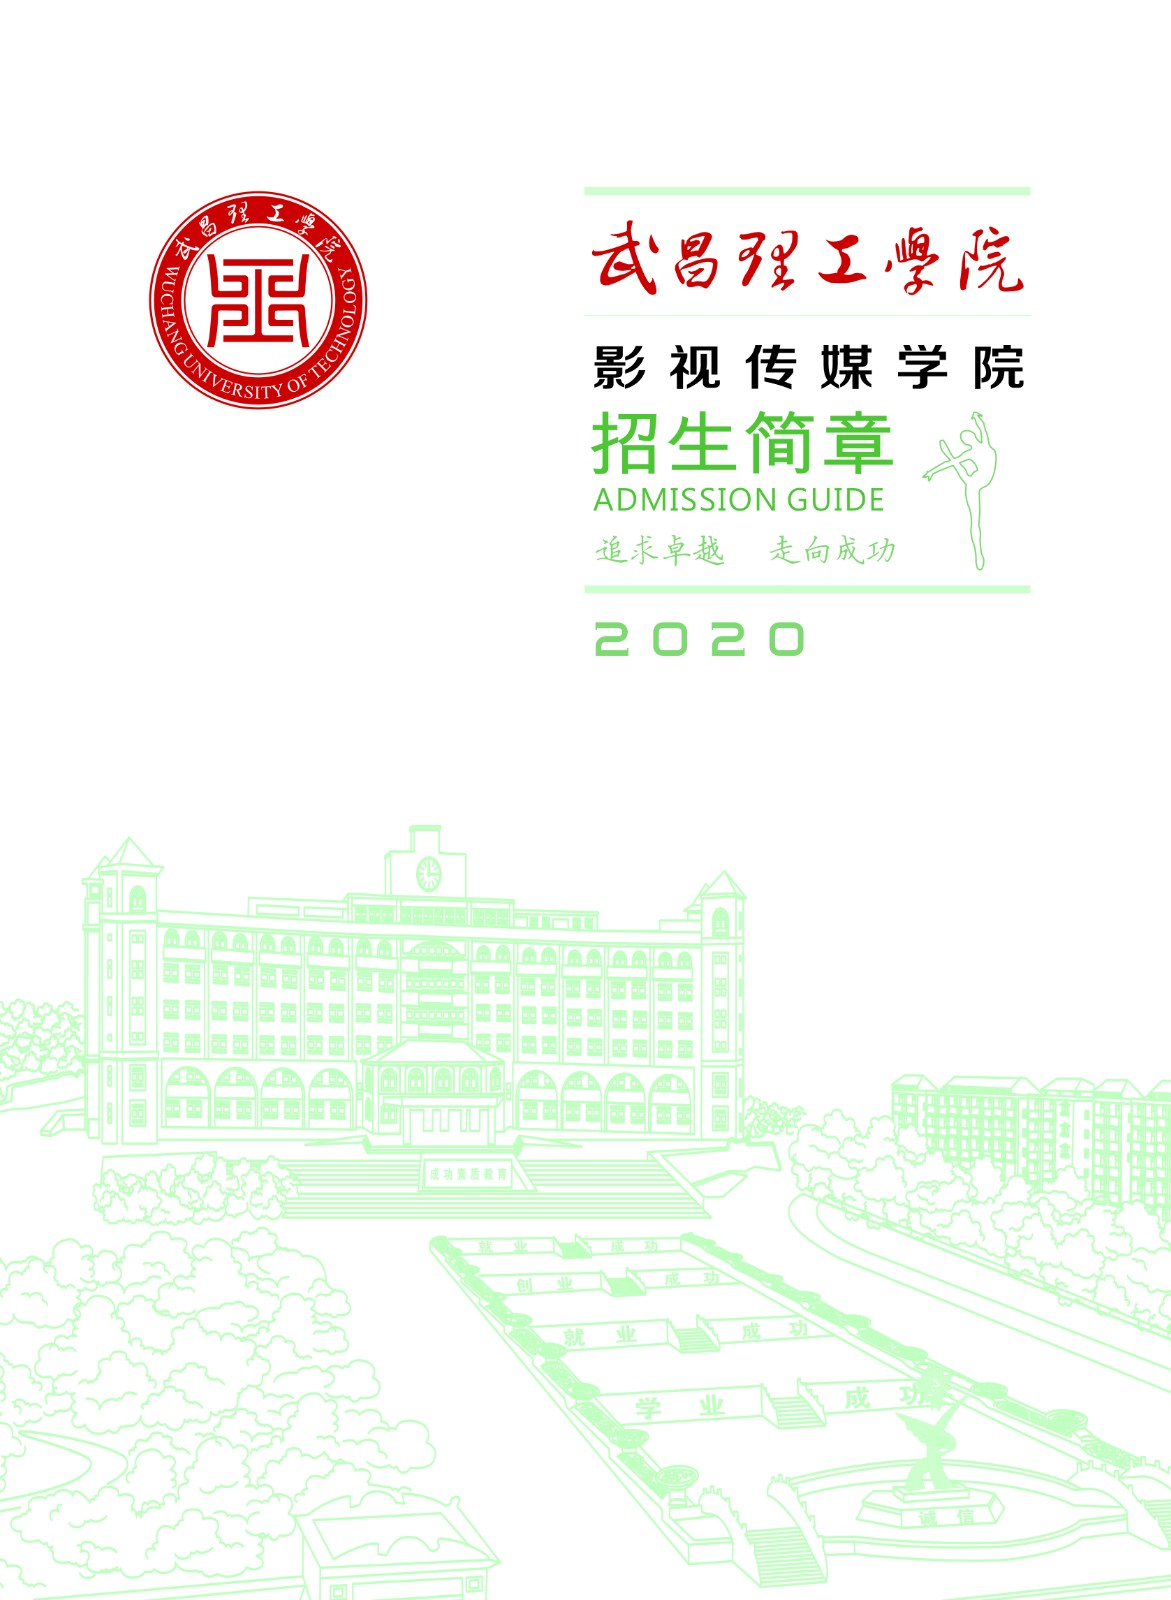 武昌理工学院2020年艺术类校考调整公告(招生简章)